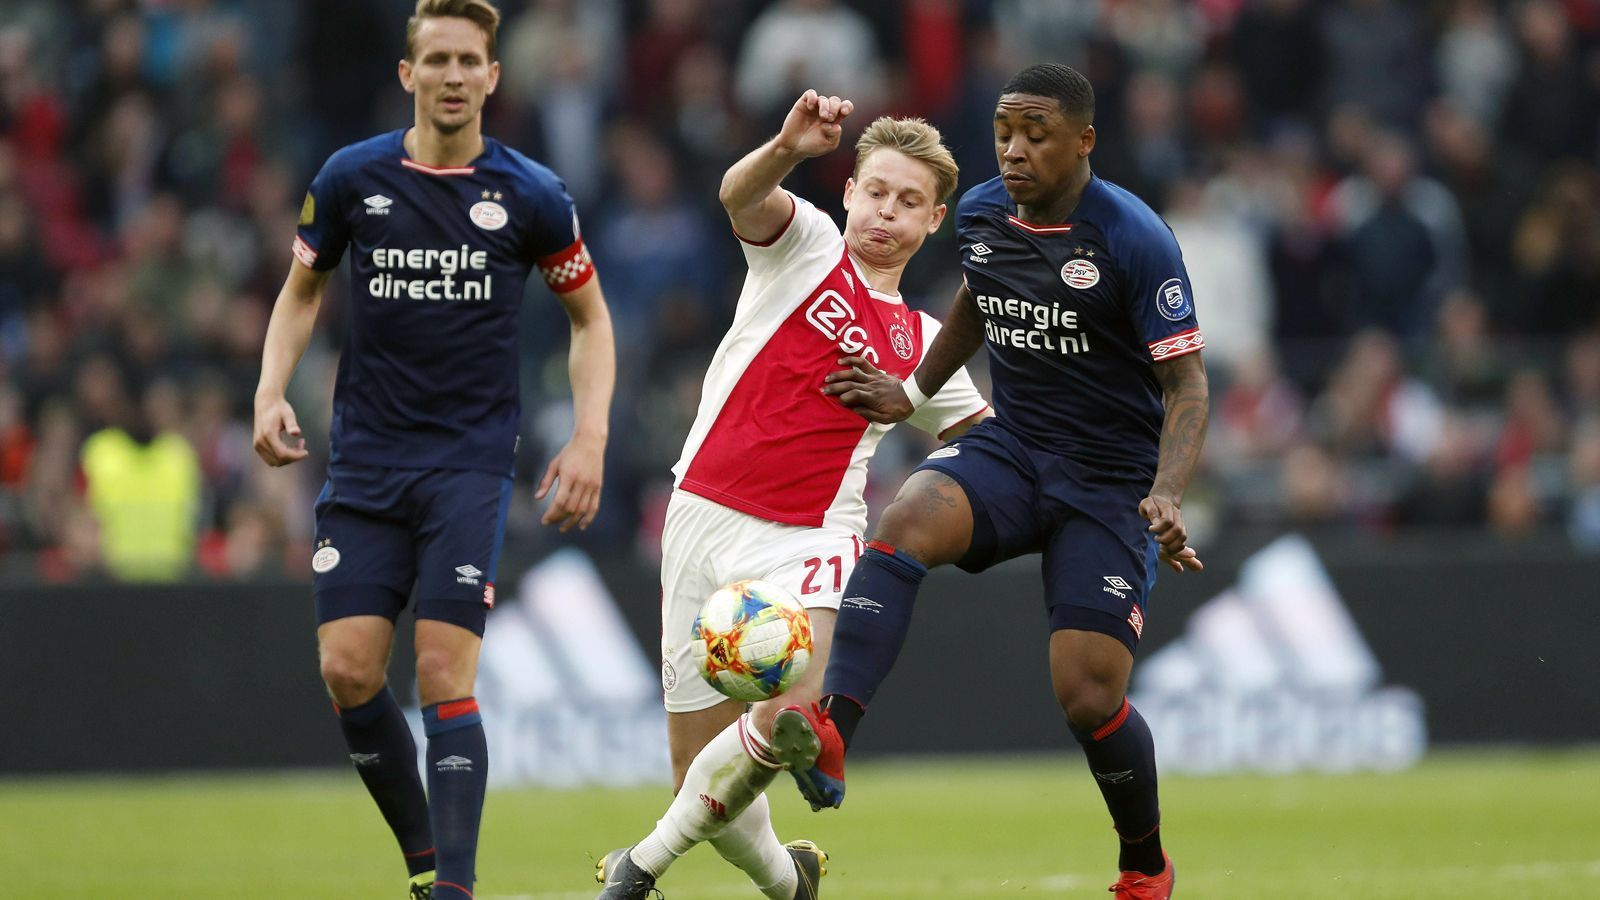 
                <strong>Eredivisie (Niederlande)</strong><br>
                Ajax Amsterdam um den künftigen Barca-Star Frenkie de Jong (Mi.) hat die Meisterschaft in den Niederlanden zuletzt wieder richtig spannend gemacht. Der Hauptstadt-Klub gewann mit 3:1 gegen Tabellenführer PSV Eindhoven und liegt damit bei noch sechs verbleibenden Spielen mit 65 Punkten nur mehr zwei Zähler hinter dem Titelverteidiger der Eredivisie. Die PSV von Trainer Mark van Bommel wird im Saison-Endspurt wohl weiterhin auf die Treffsicherheit von Topstürmer Luuk de Jong (li.) setzen. Der frühere Gladbacher hat schon 22 Saisontore auf dem Konto und führt die Torschützenliste der Eredivisie an.
              